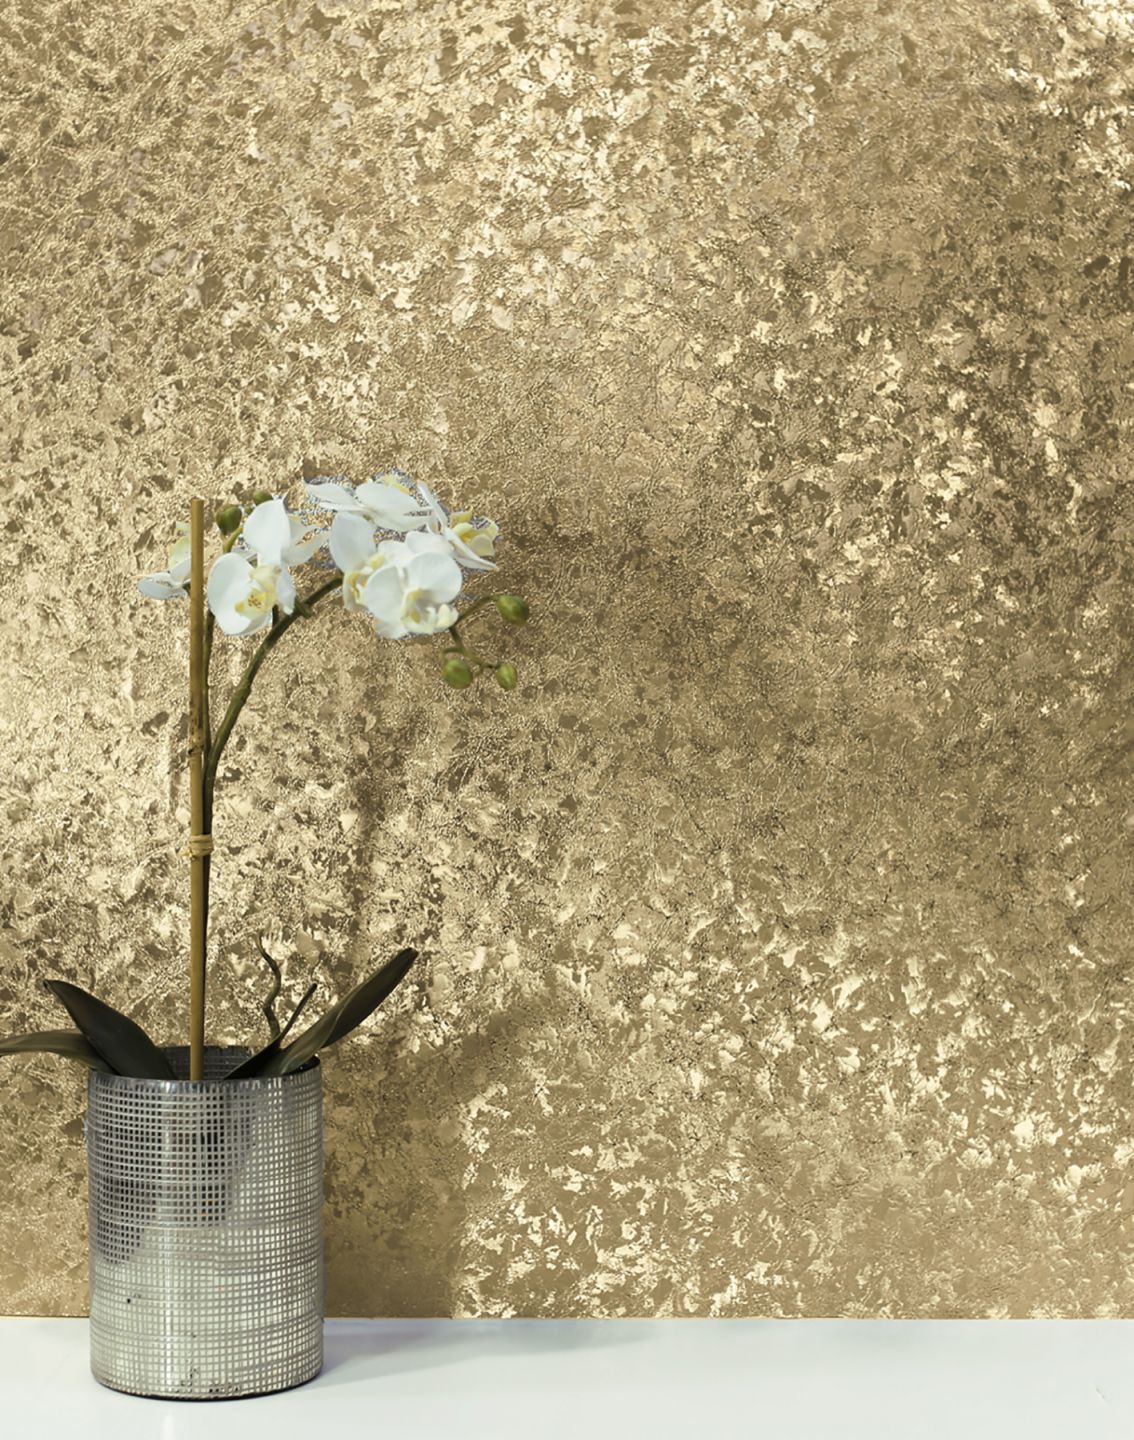 Papel de parede metalizado em tons dourados brilhantes por trás de um vaso com uma orquídea branca